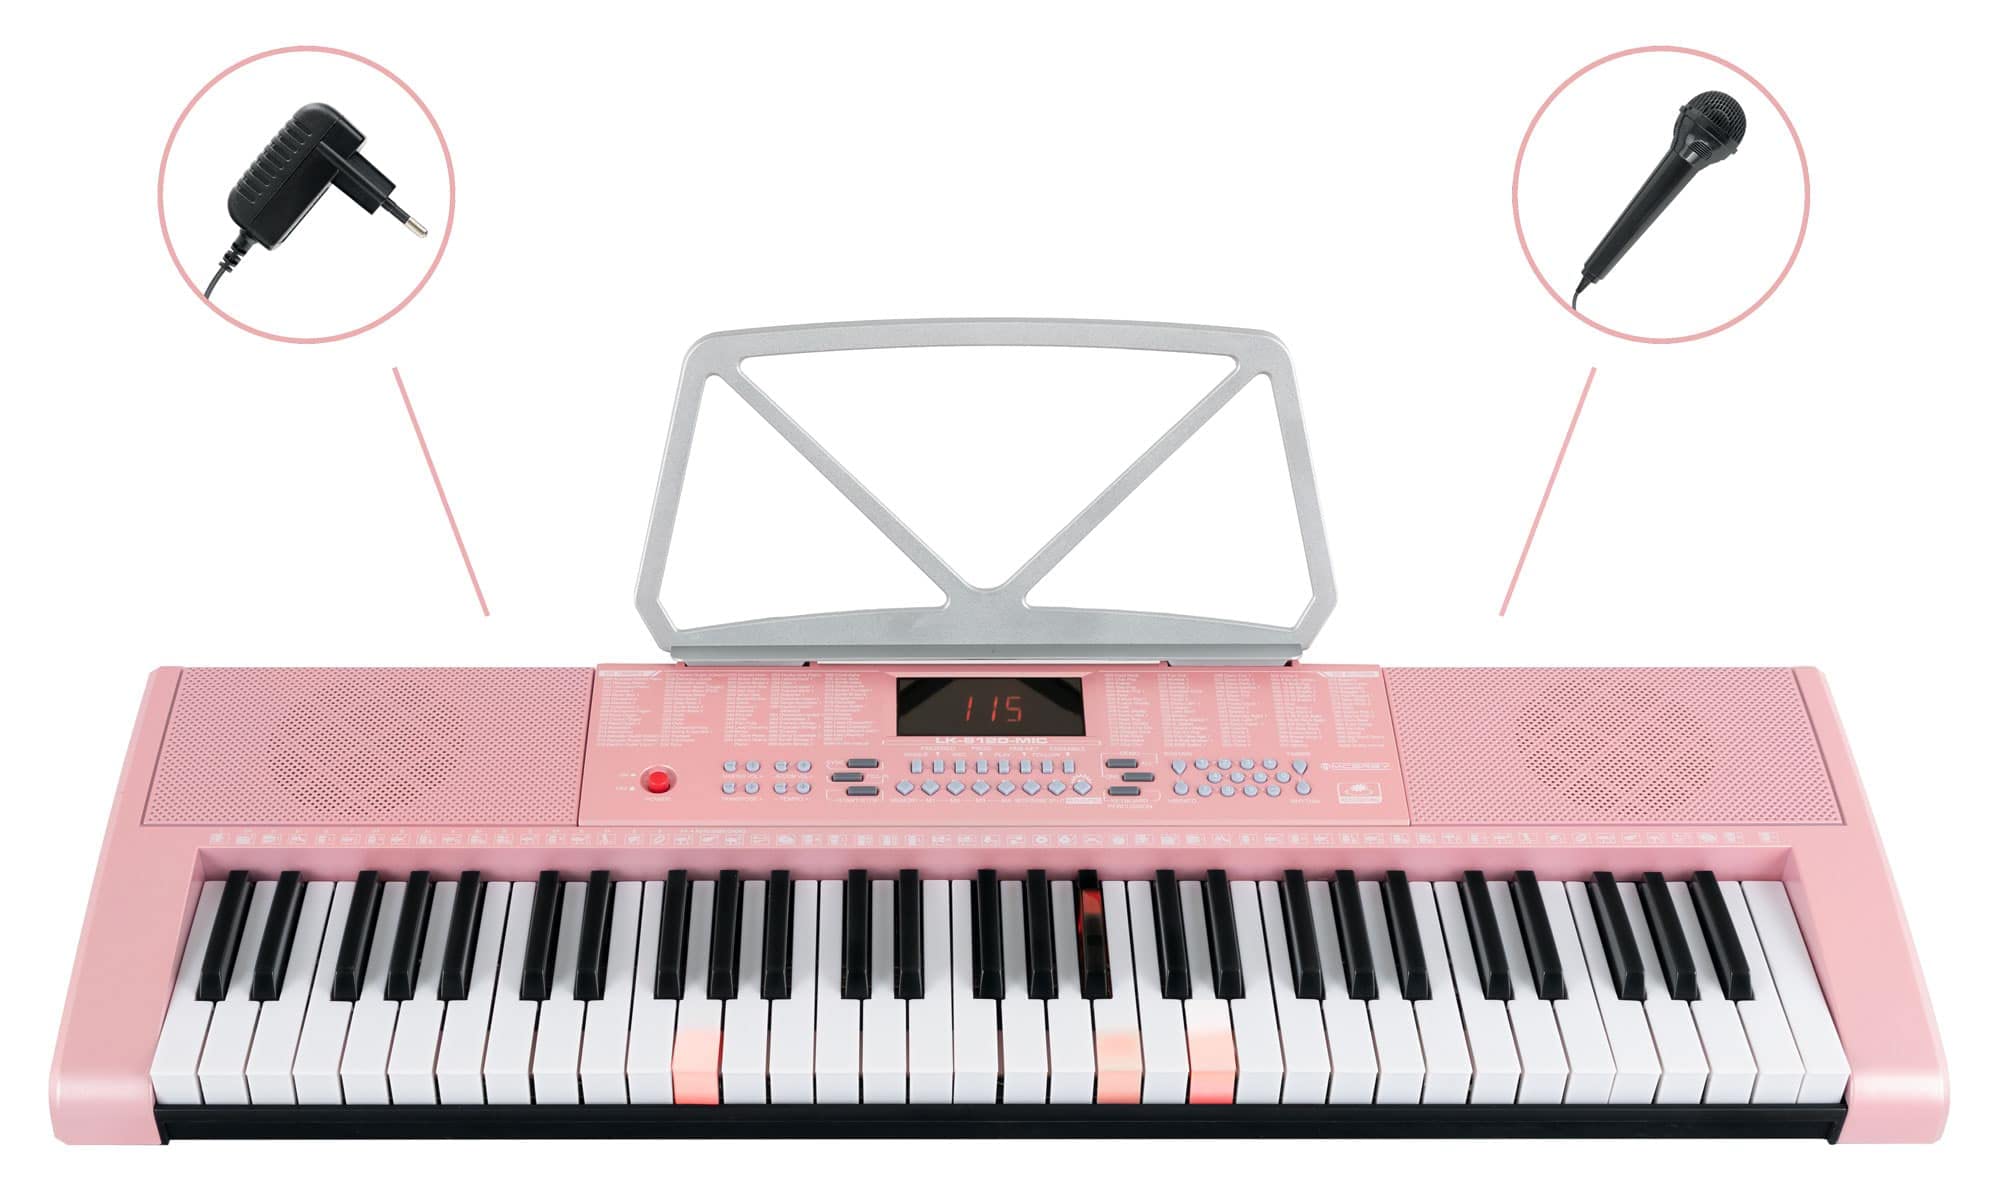 McGrey LK-6120-MIC Keyboard Set - Einsteiger-Keyboard mit 61 Leuchttasten - 255 Sounds und 255 Rhythmen - 50 Demo Songs - Inklusive Mikrofon - Spar-Set inkl. X-Keyboardständer und Kopfhörer - Pink